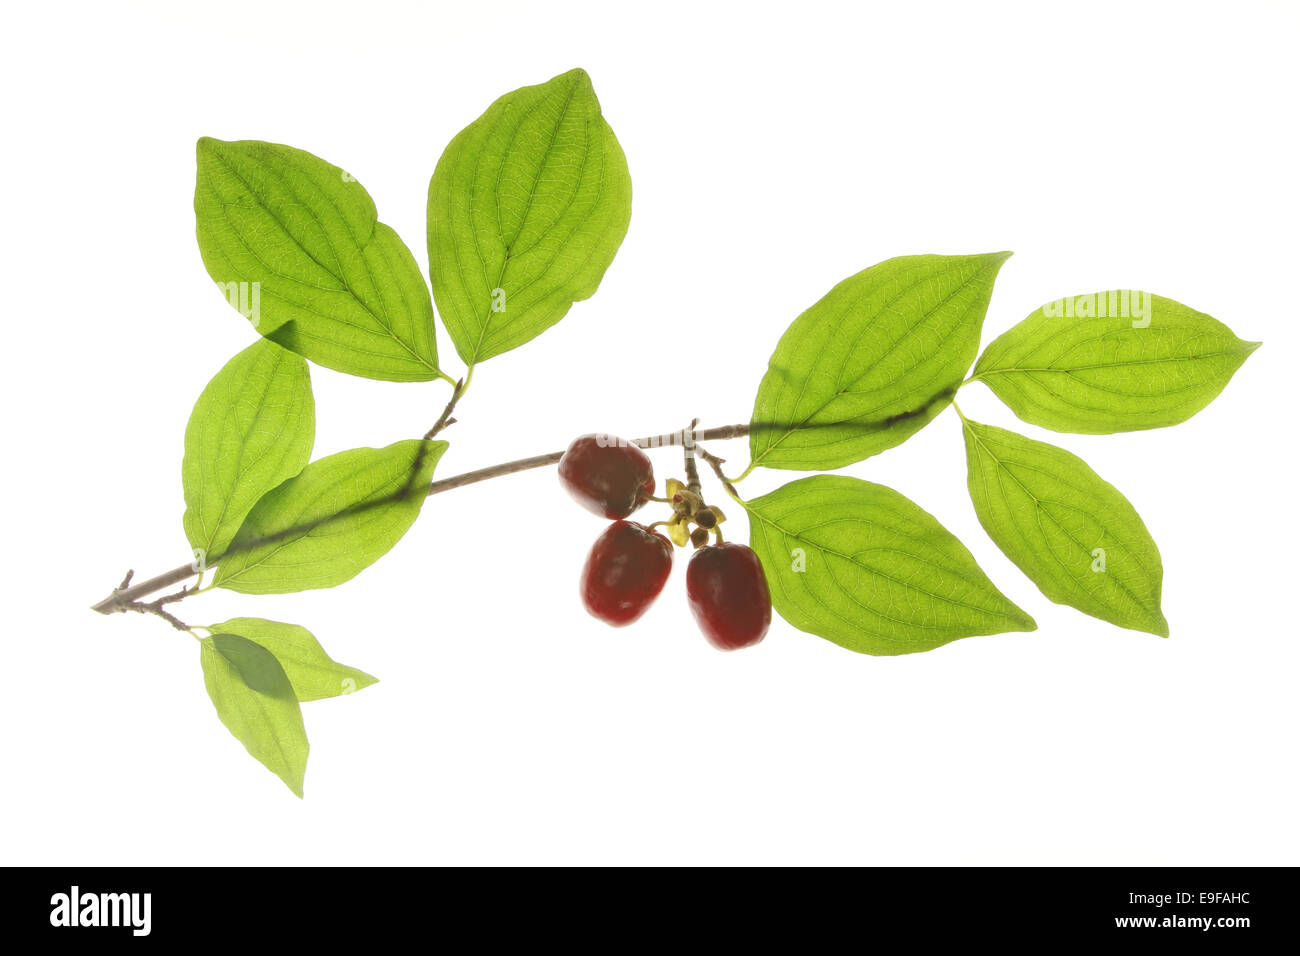 Cornelian cherries (Cornus mas) Stock Photo